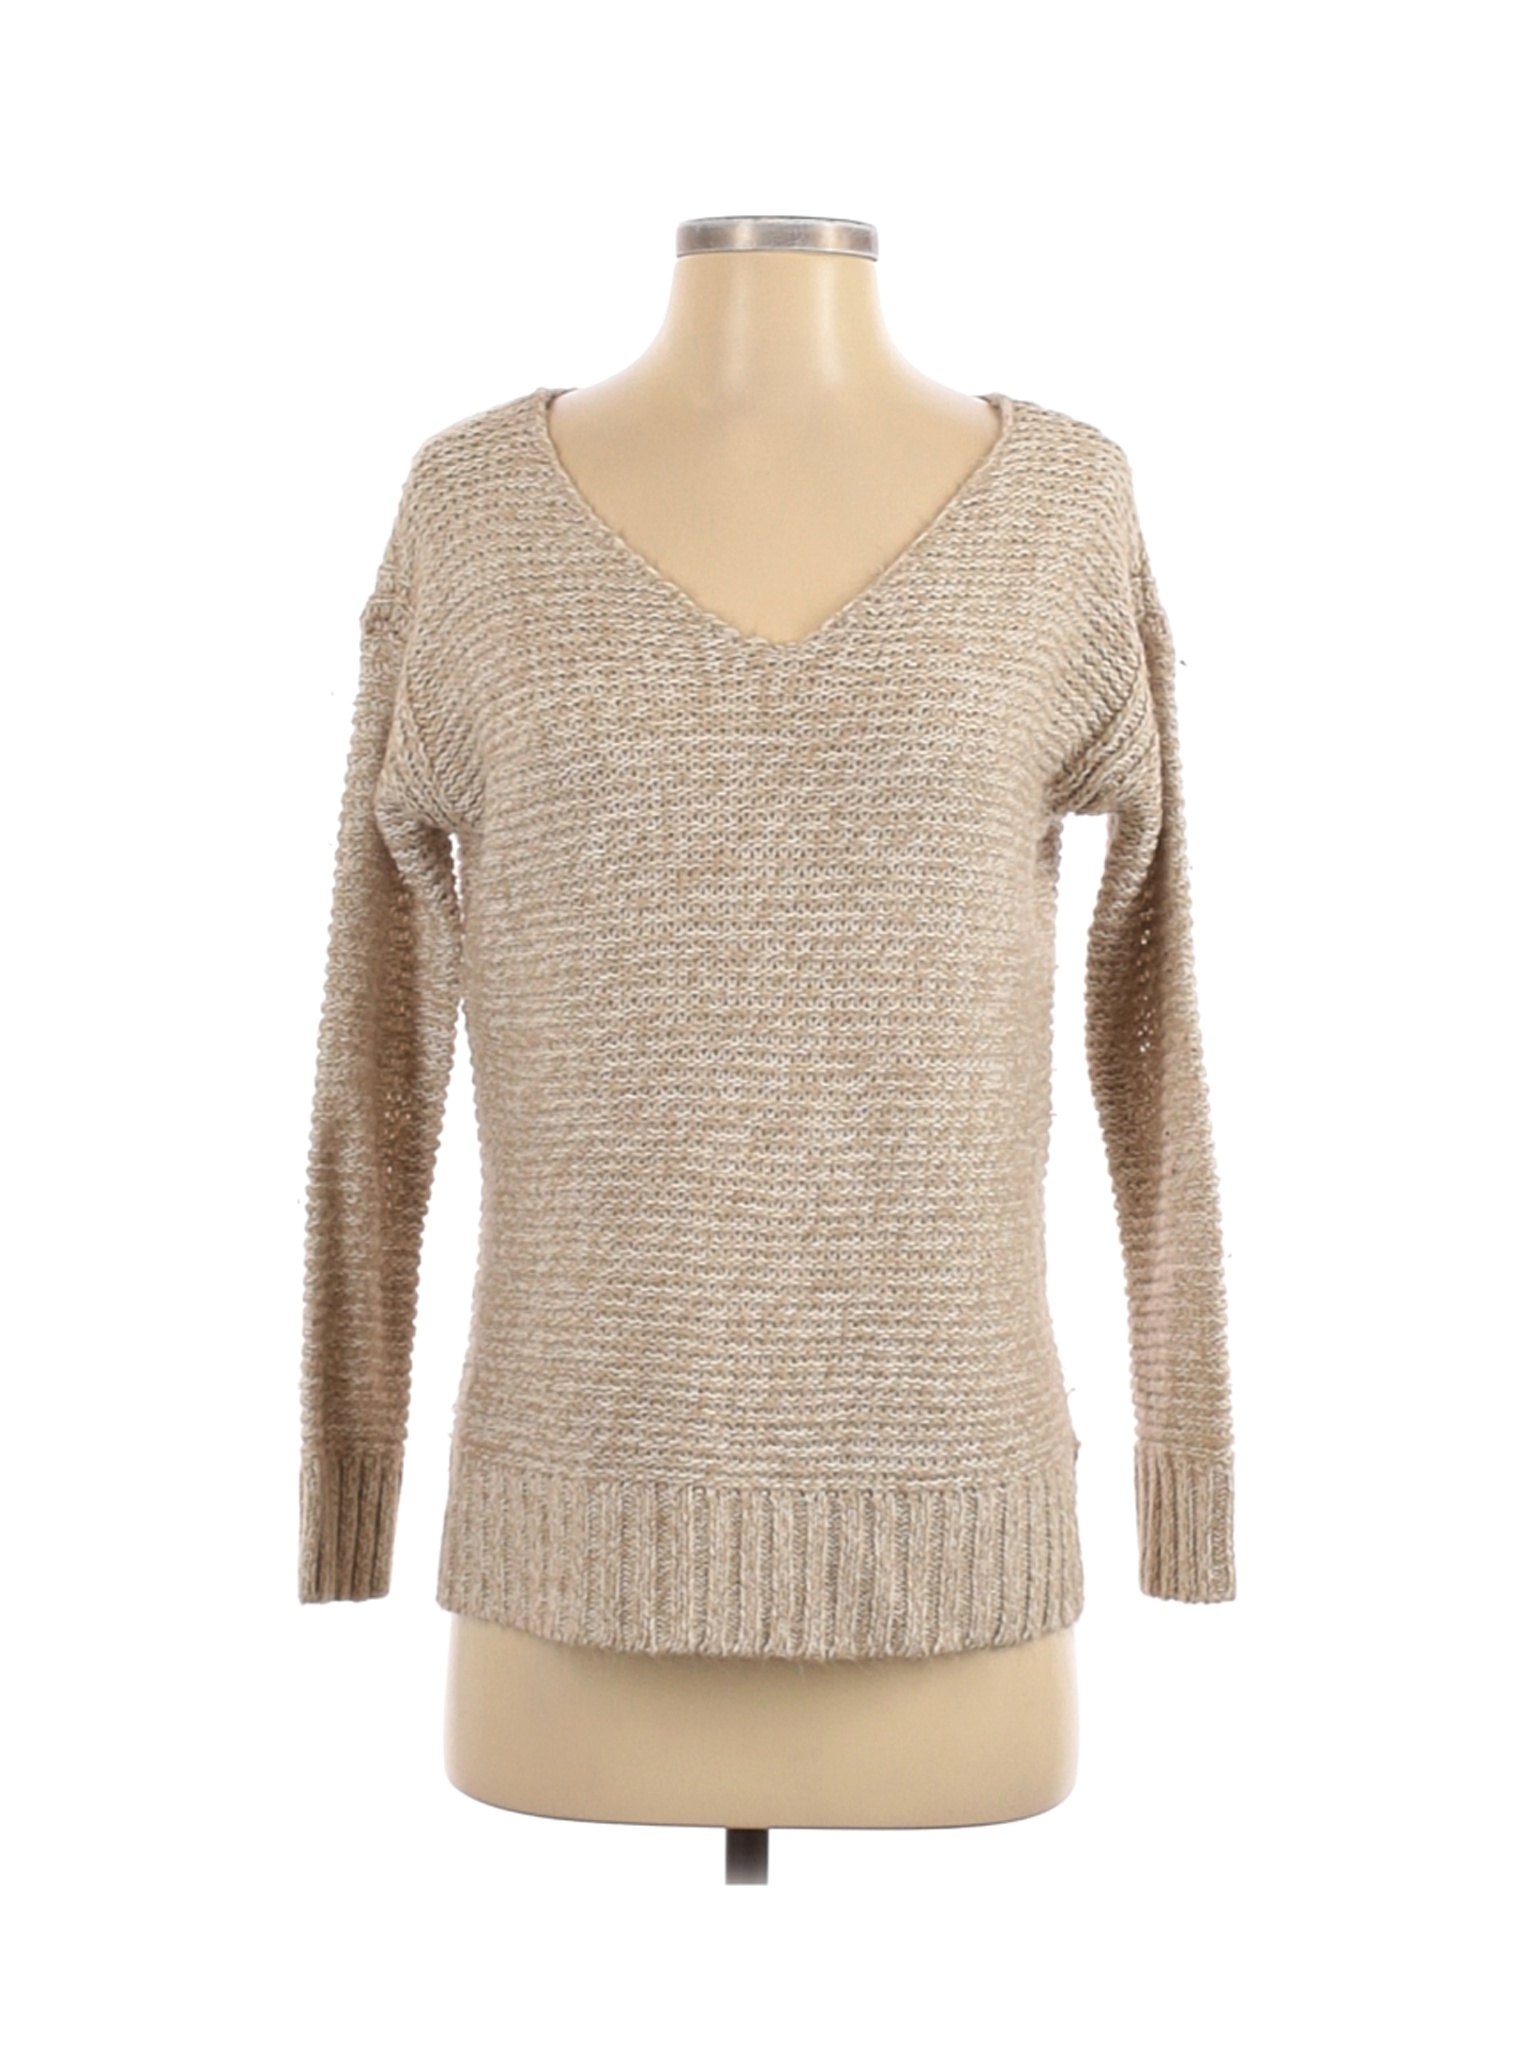 Essentials Women Brown Pullover Sweater XS | eBay